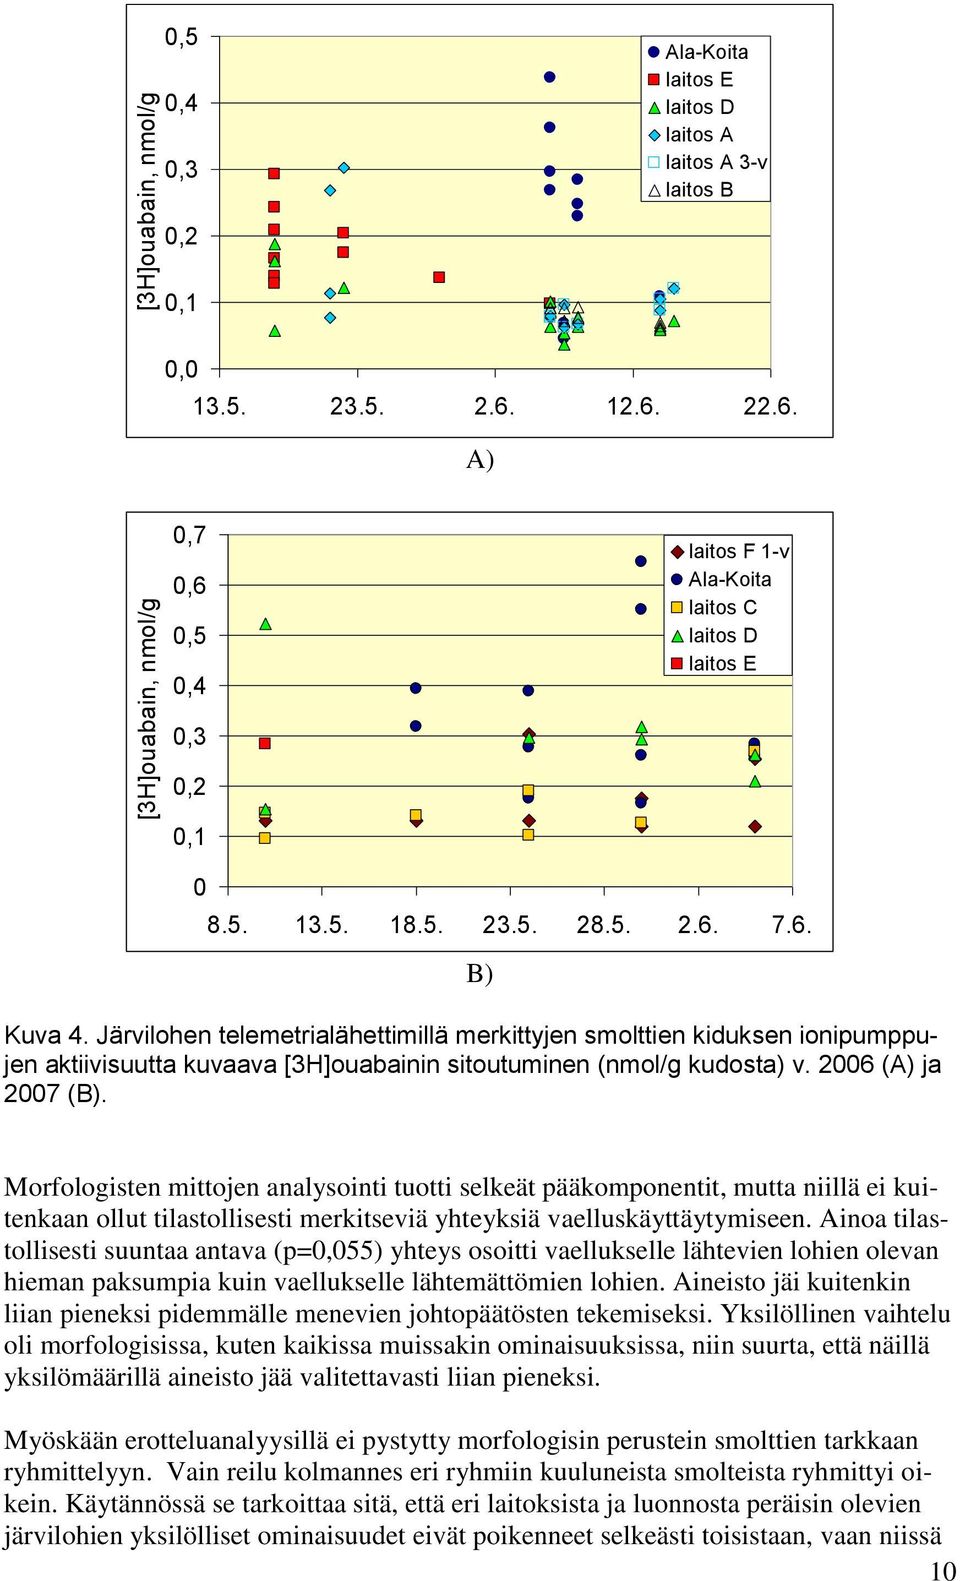 Järvilohen telemetrialähettimillä merkittyjen smolttien kiduksen ionipumppujen aktiivisuutta kuvaava [3H]ouabainin sitoutuminen (nmol/g kudosta) v. 2006 (A) ja 2007 (B).